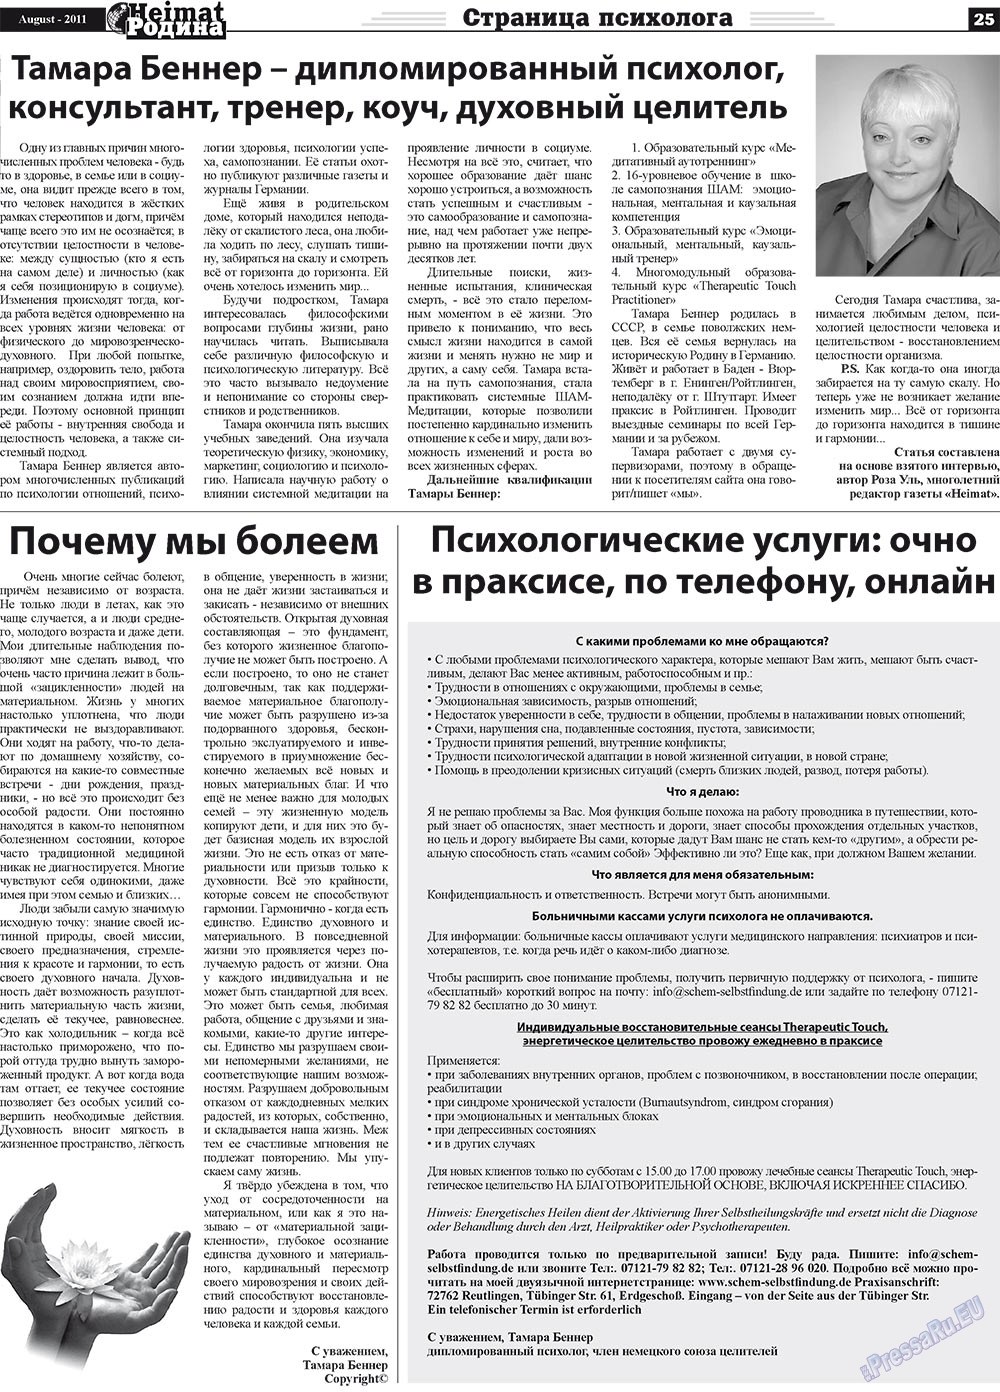 Heimat-Родина (газета). 2011 год, номер 8, стр. 25